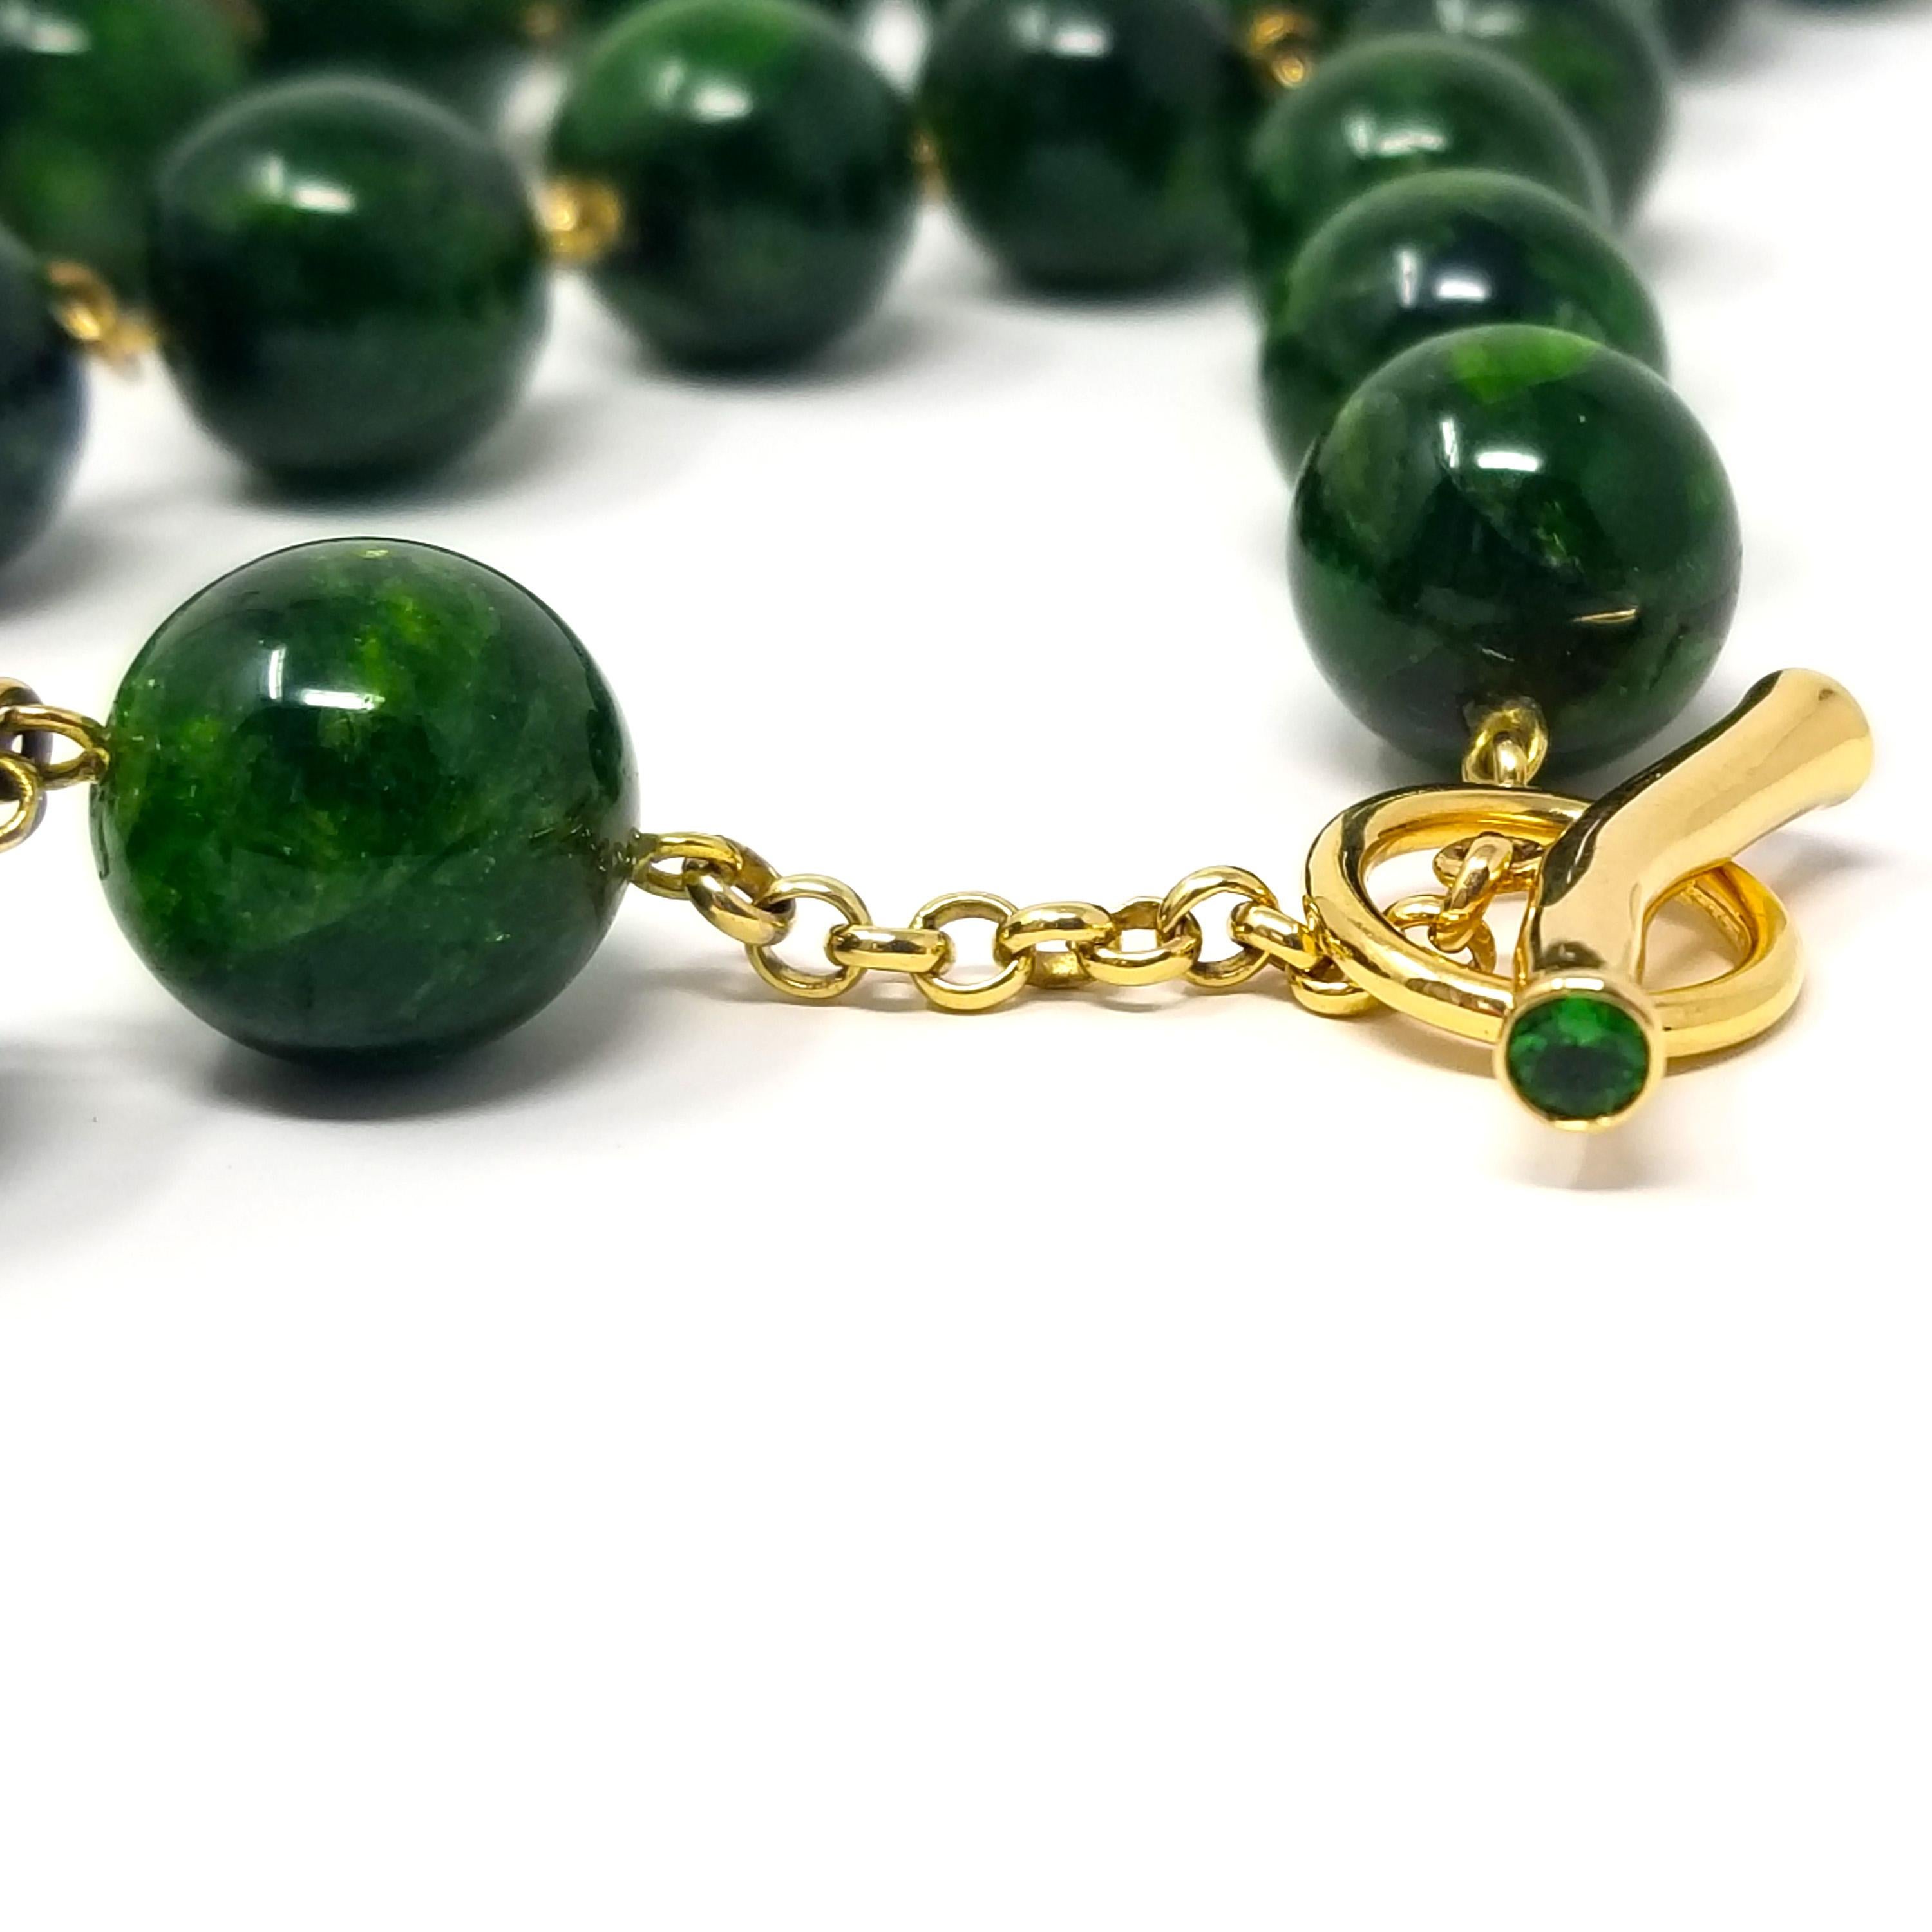 Diese außergewöhnlich luxuriösen, schimmernden und grünen Chromdiopsid-Perlen sind völlig unerwartet. Diese farbenprächtigen Edelsteinperlen haben eine exquisit lebendige grüne Farbe, und jede Perle weist eine Mischung aus undurchsichtigem und